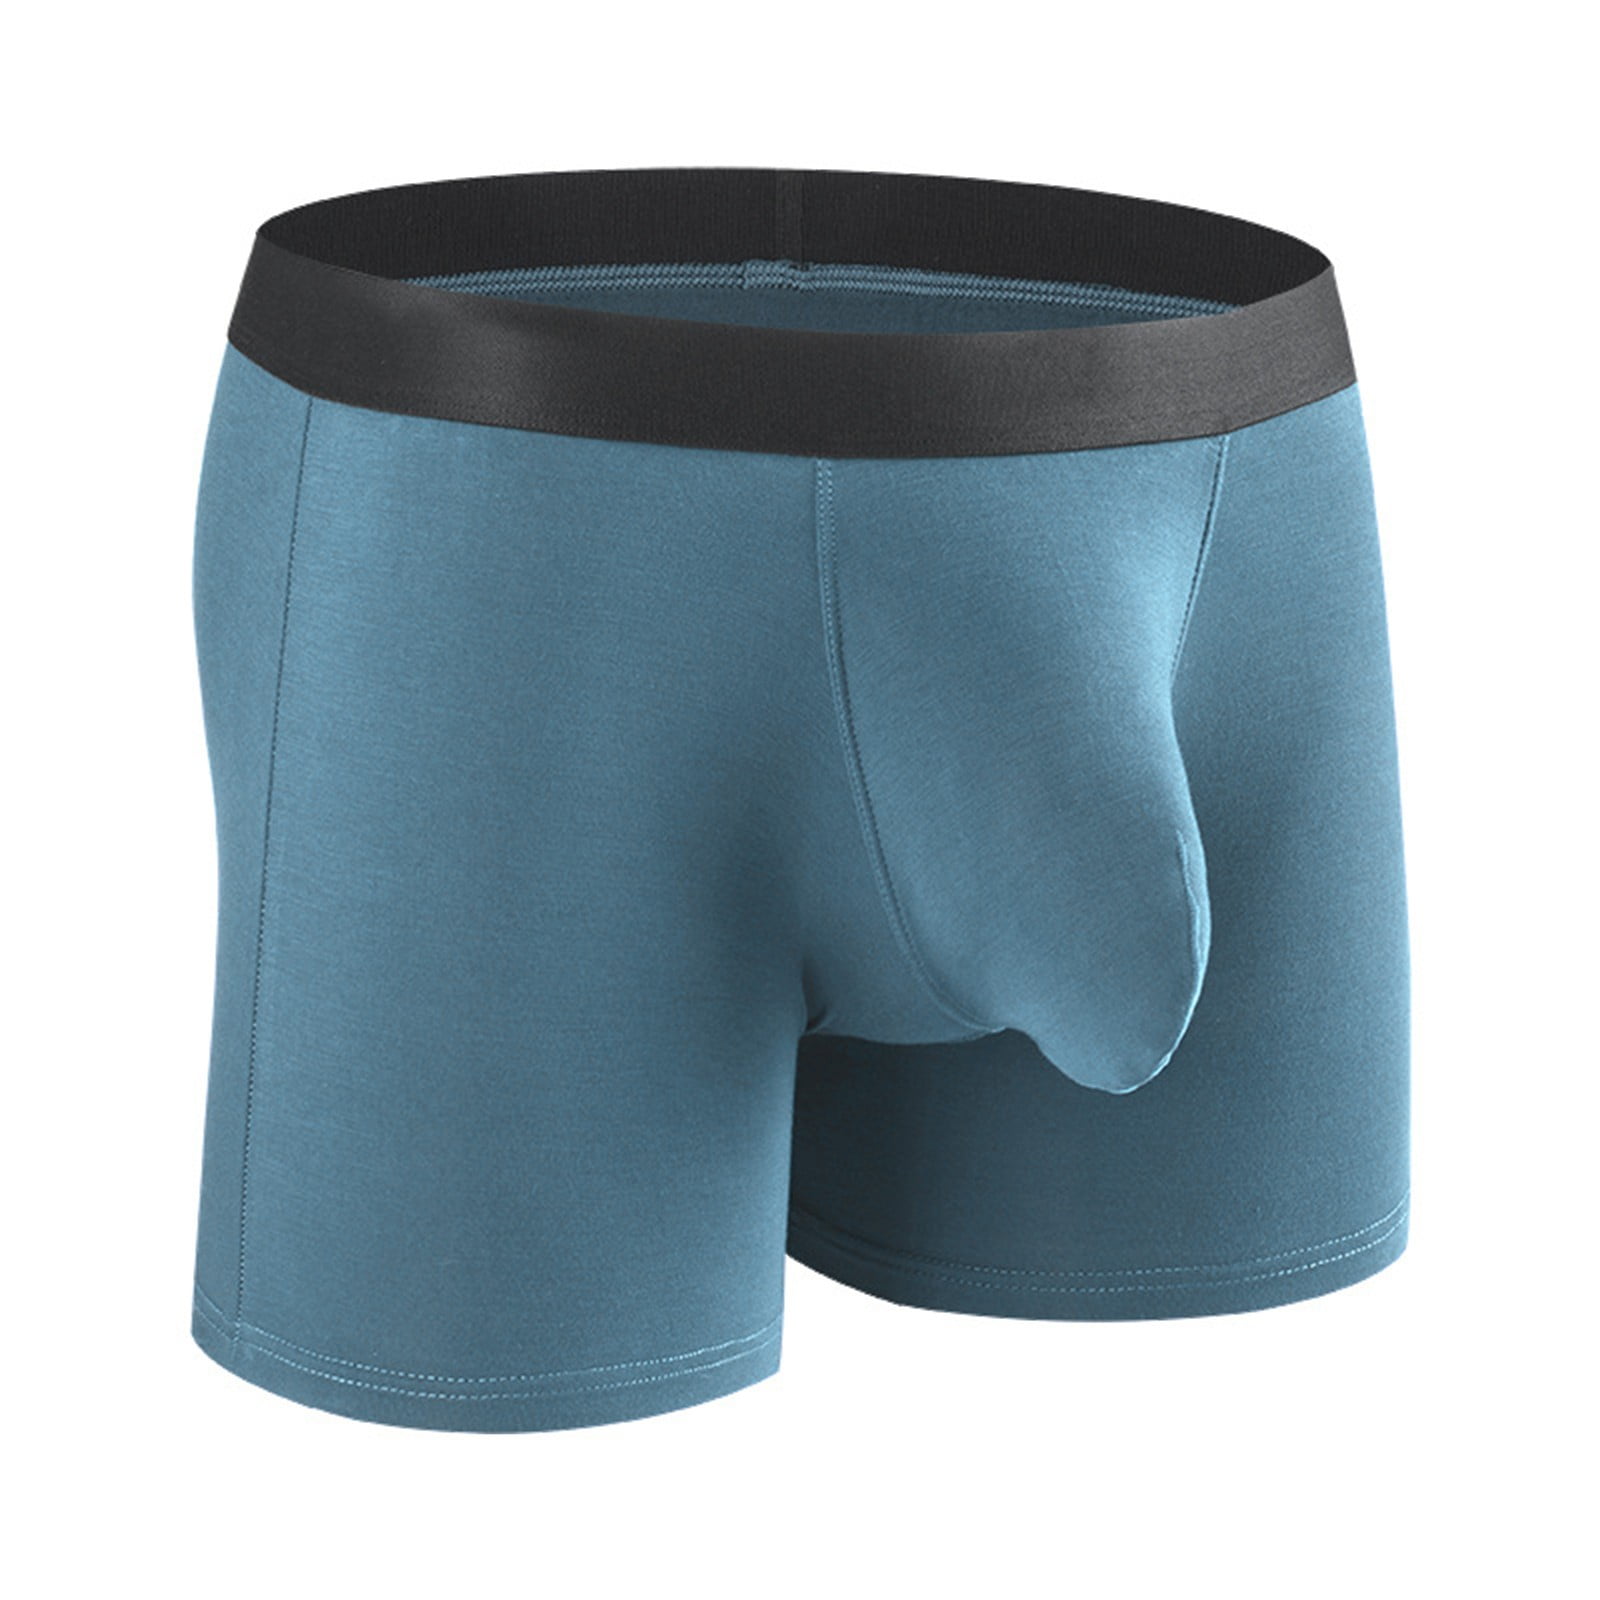 Bluey Girls Underwear 5 Pack